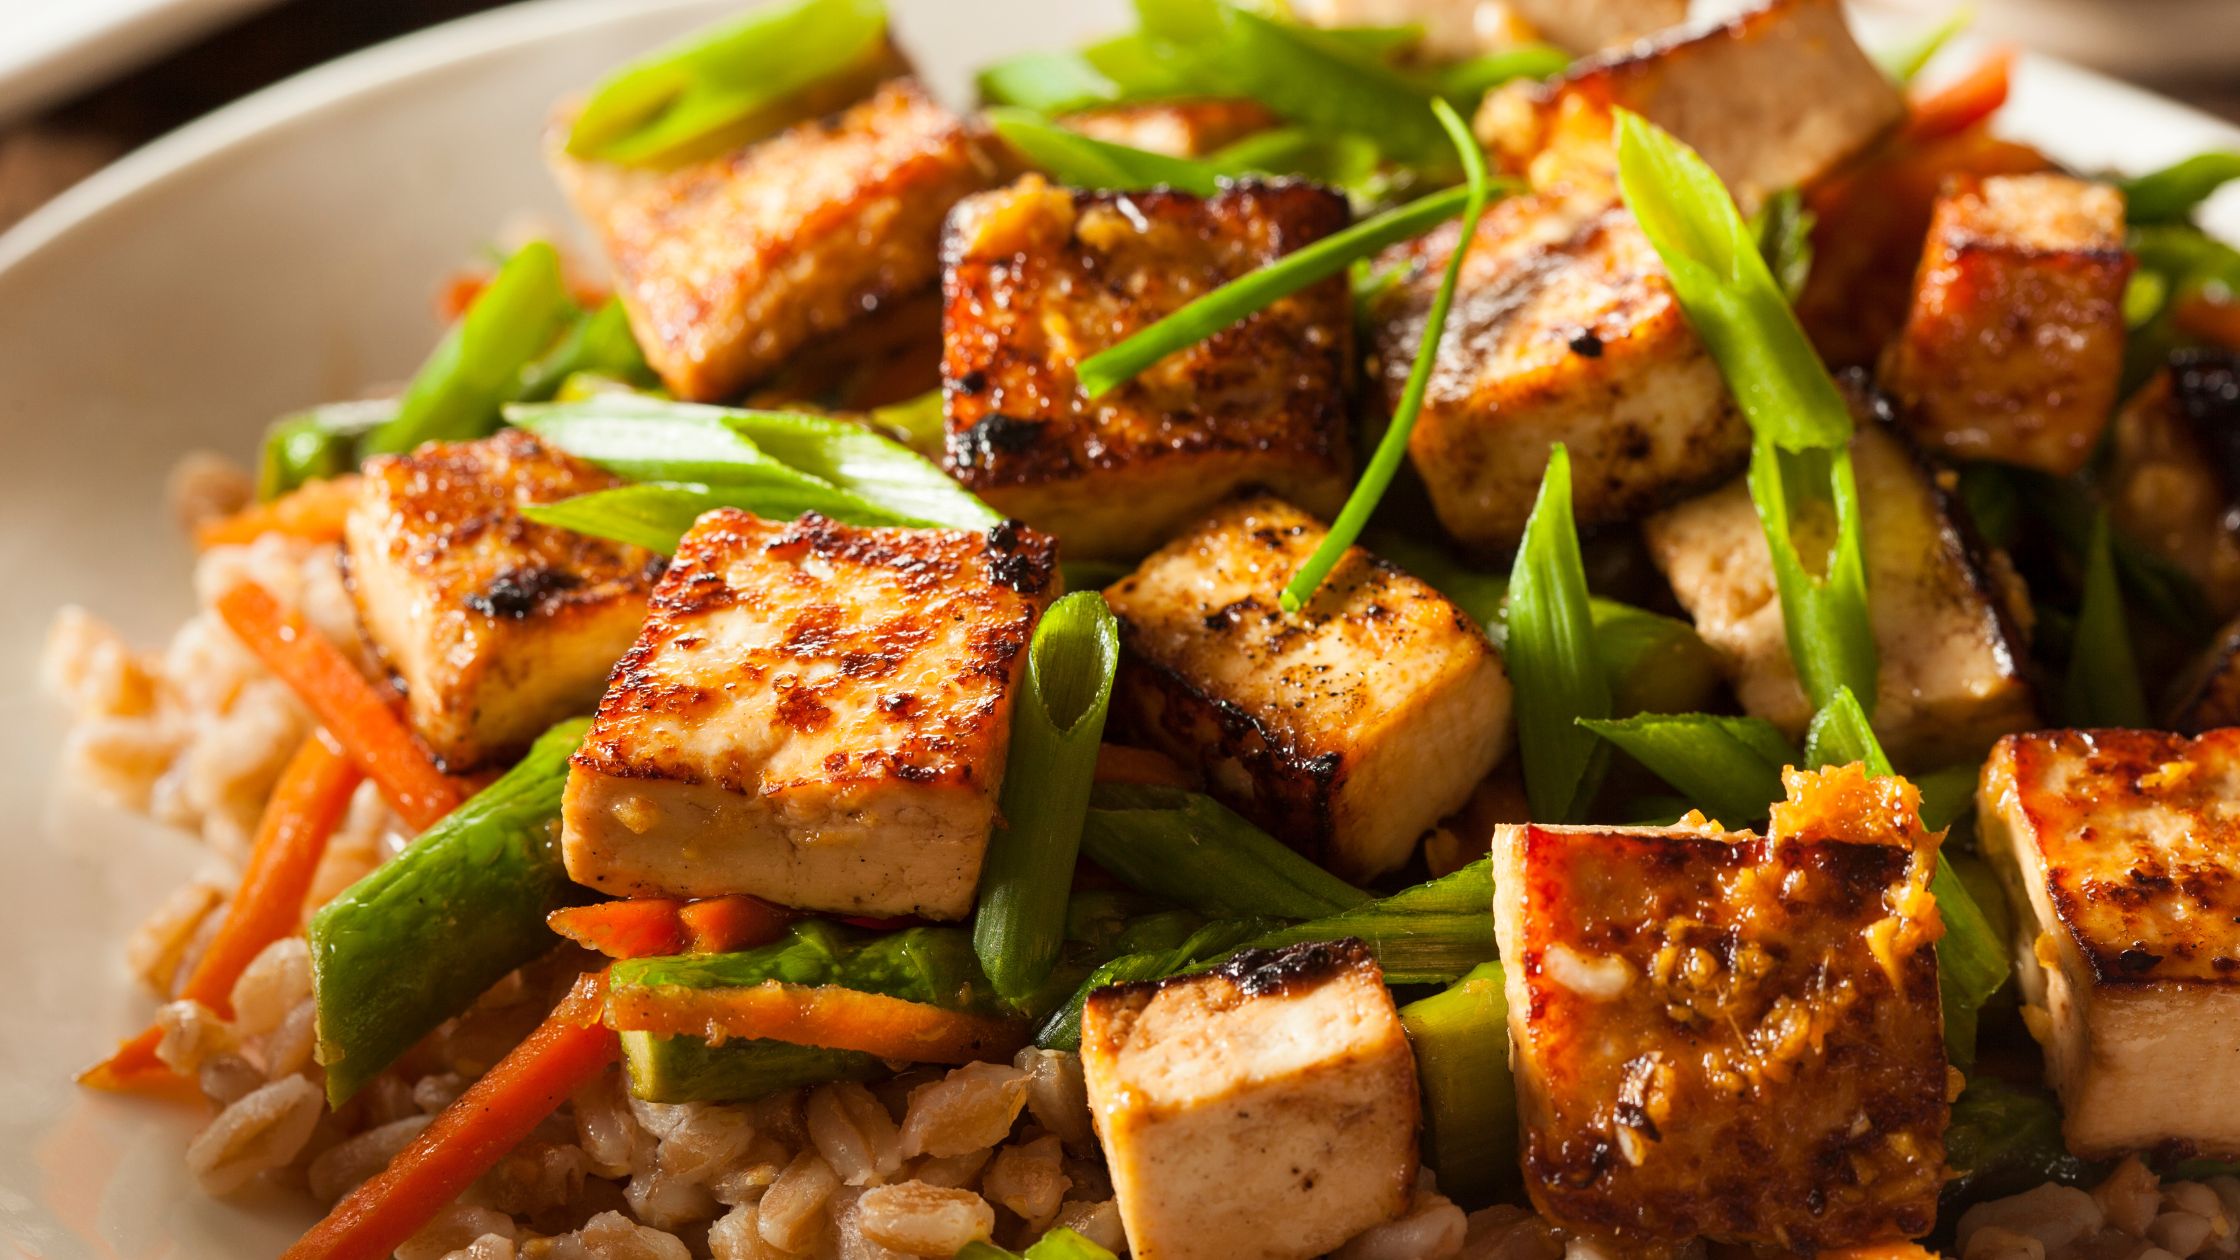 Veggie Stir-Fry with Tofu